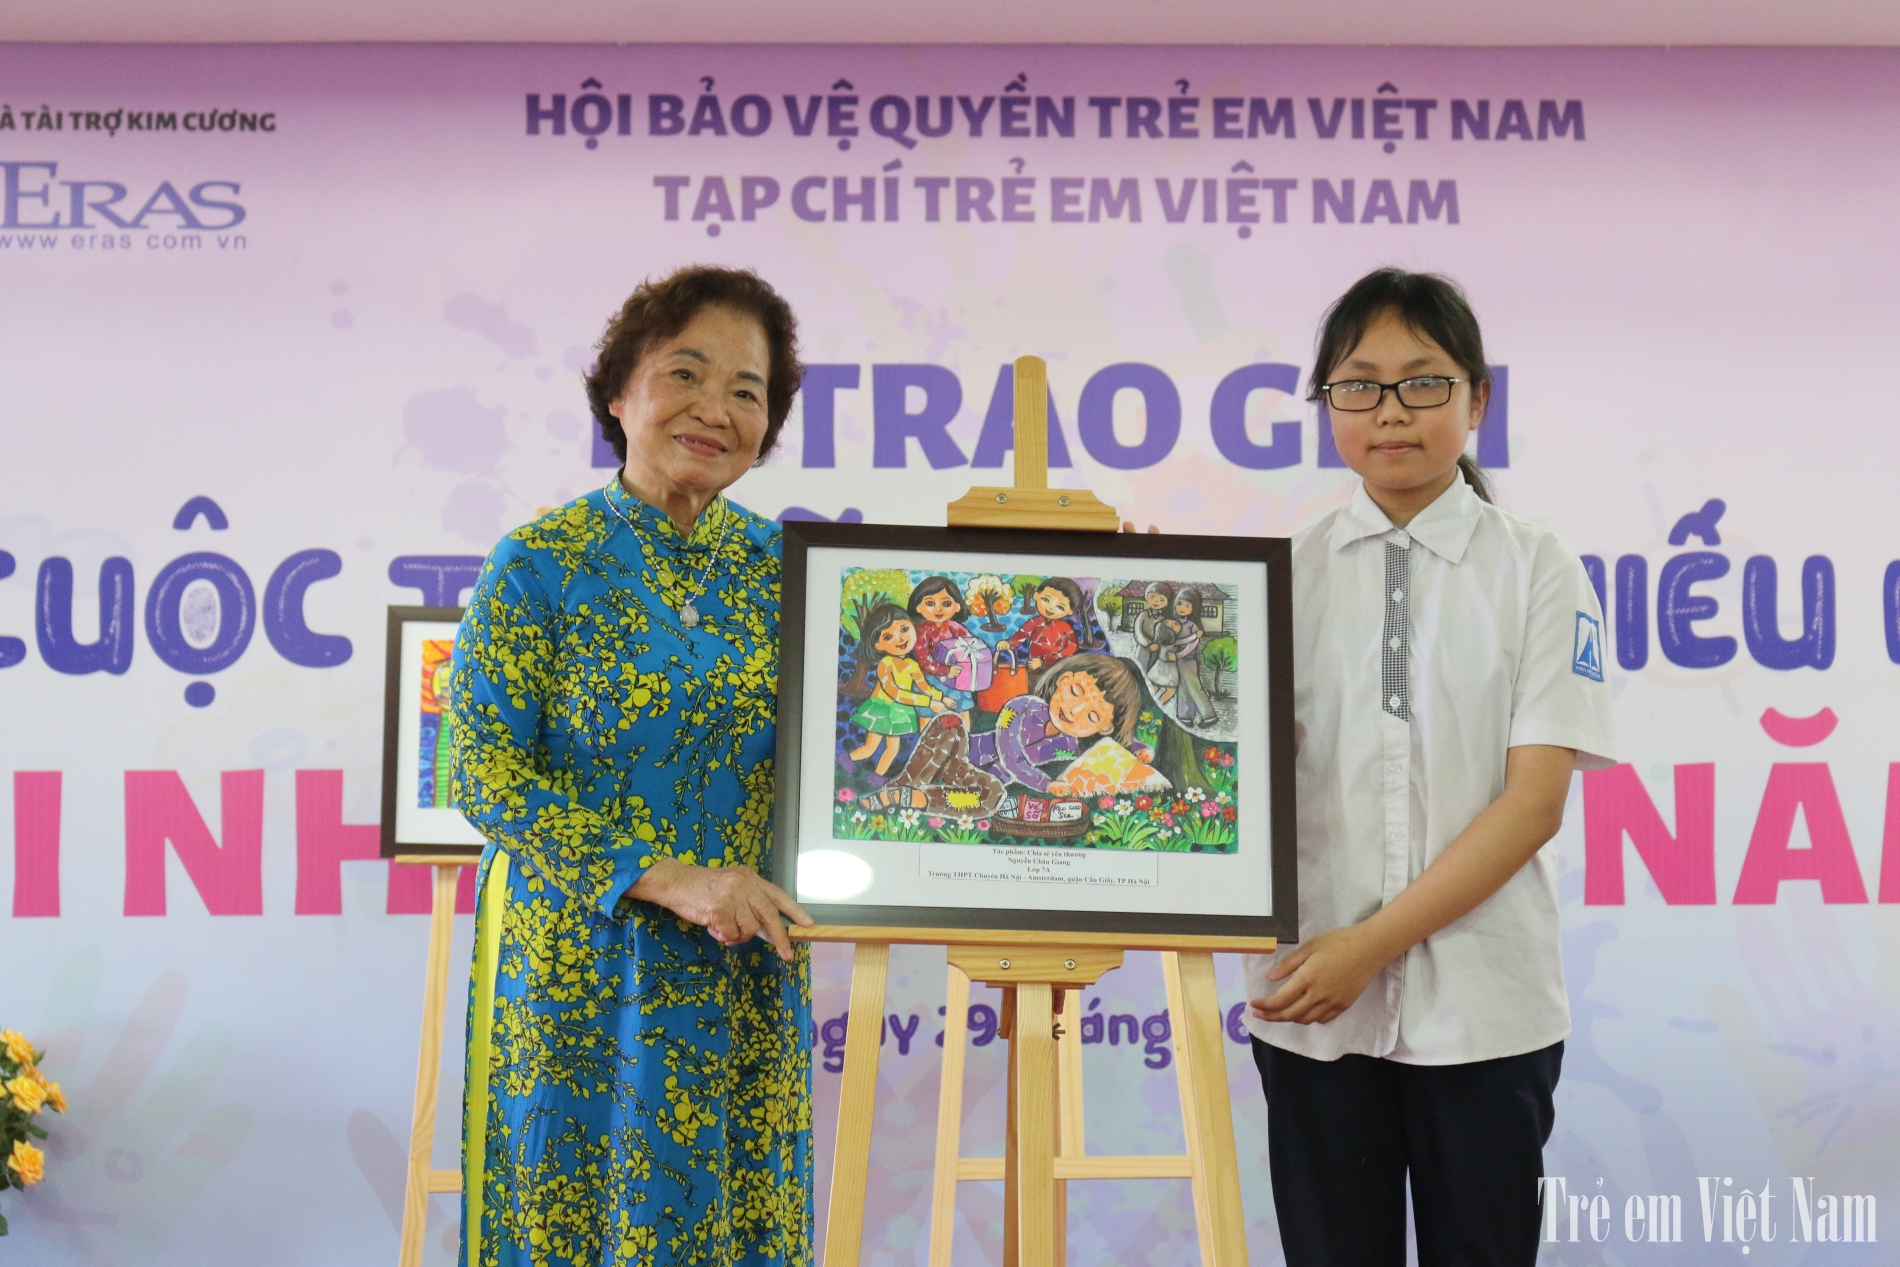 Tiến sĩ Trần Thị Thanh Thanh chụp ảnh kỷ niệm cùng tác giả Nguyễn Châu Giang, tác giả của tác phẩm "Chia sẻ yêu thương".